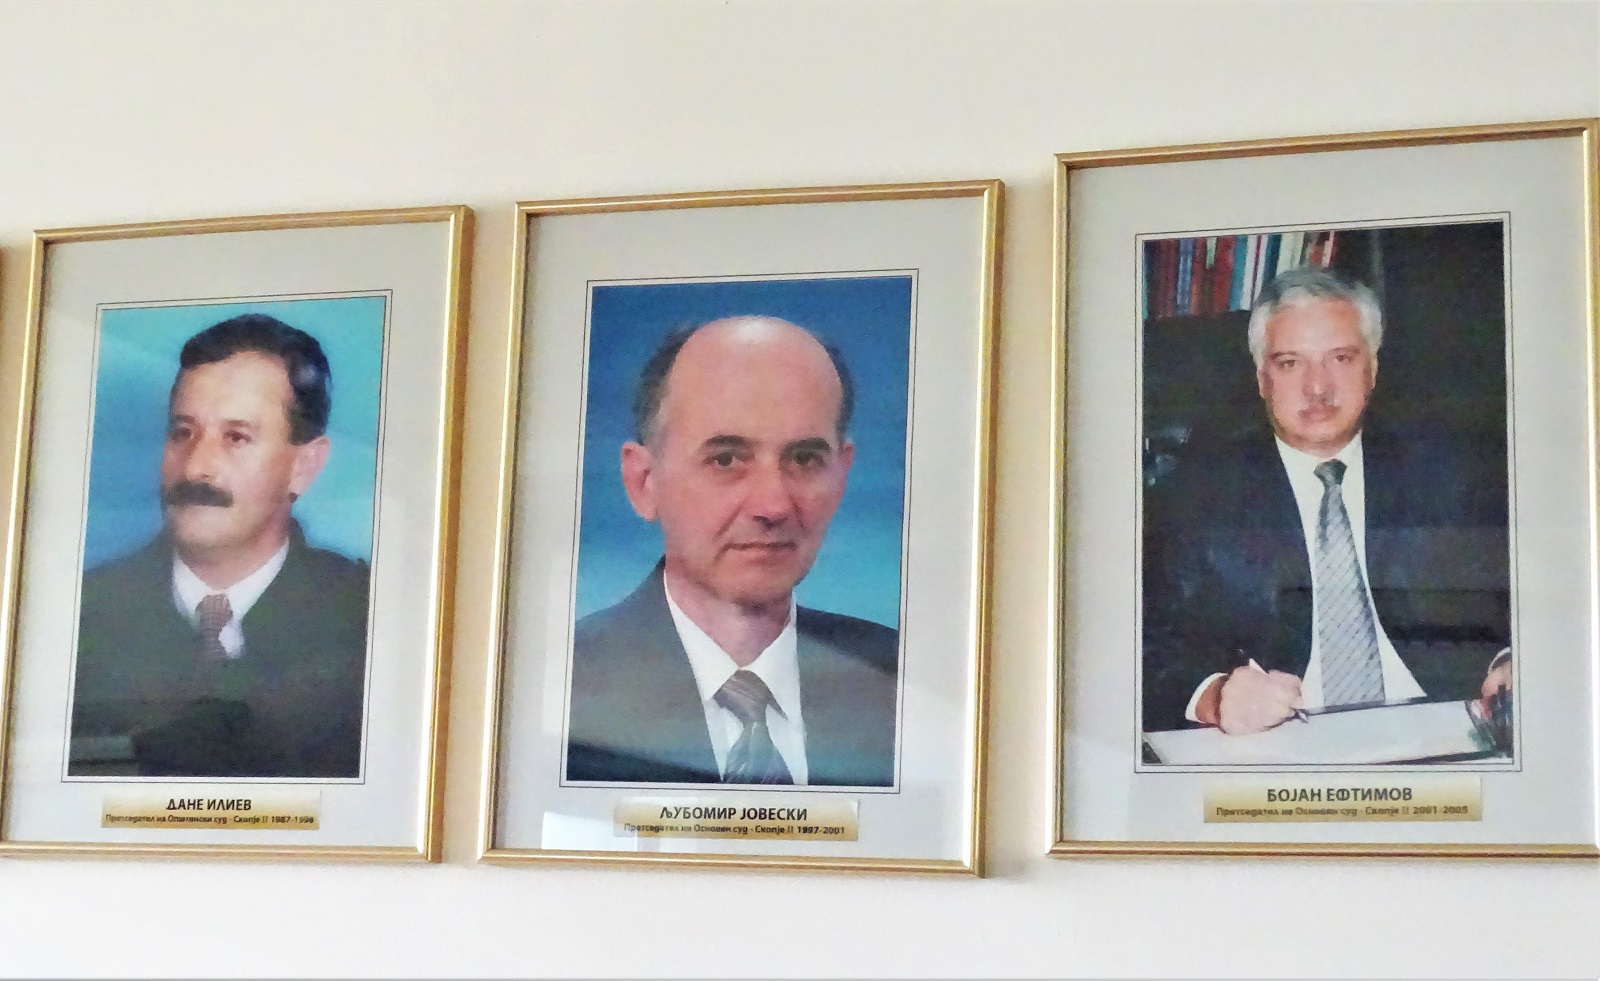 Љубомир Јовески како претседател на судот